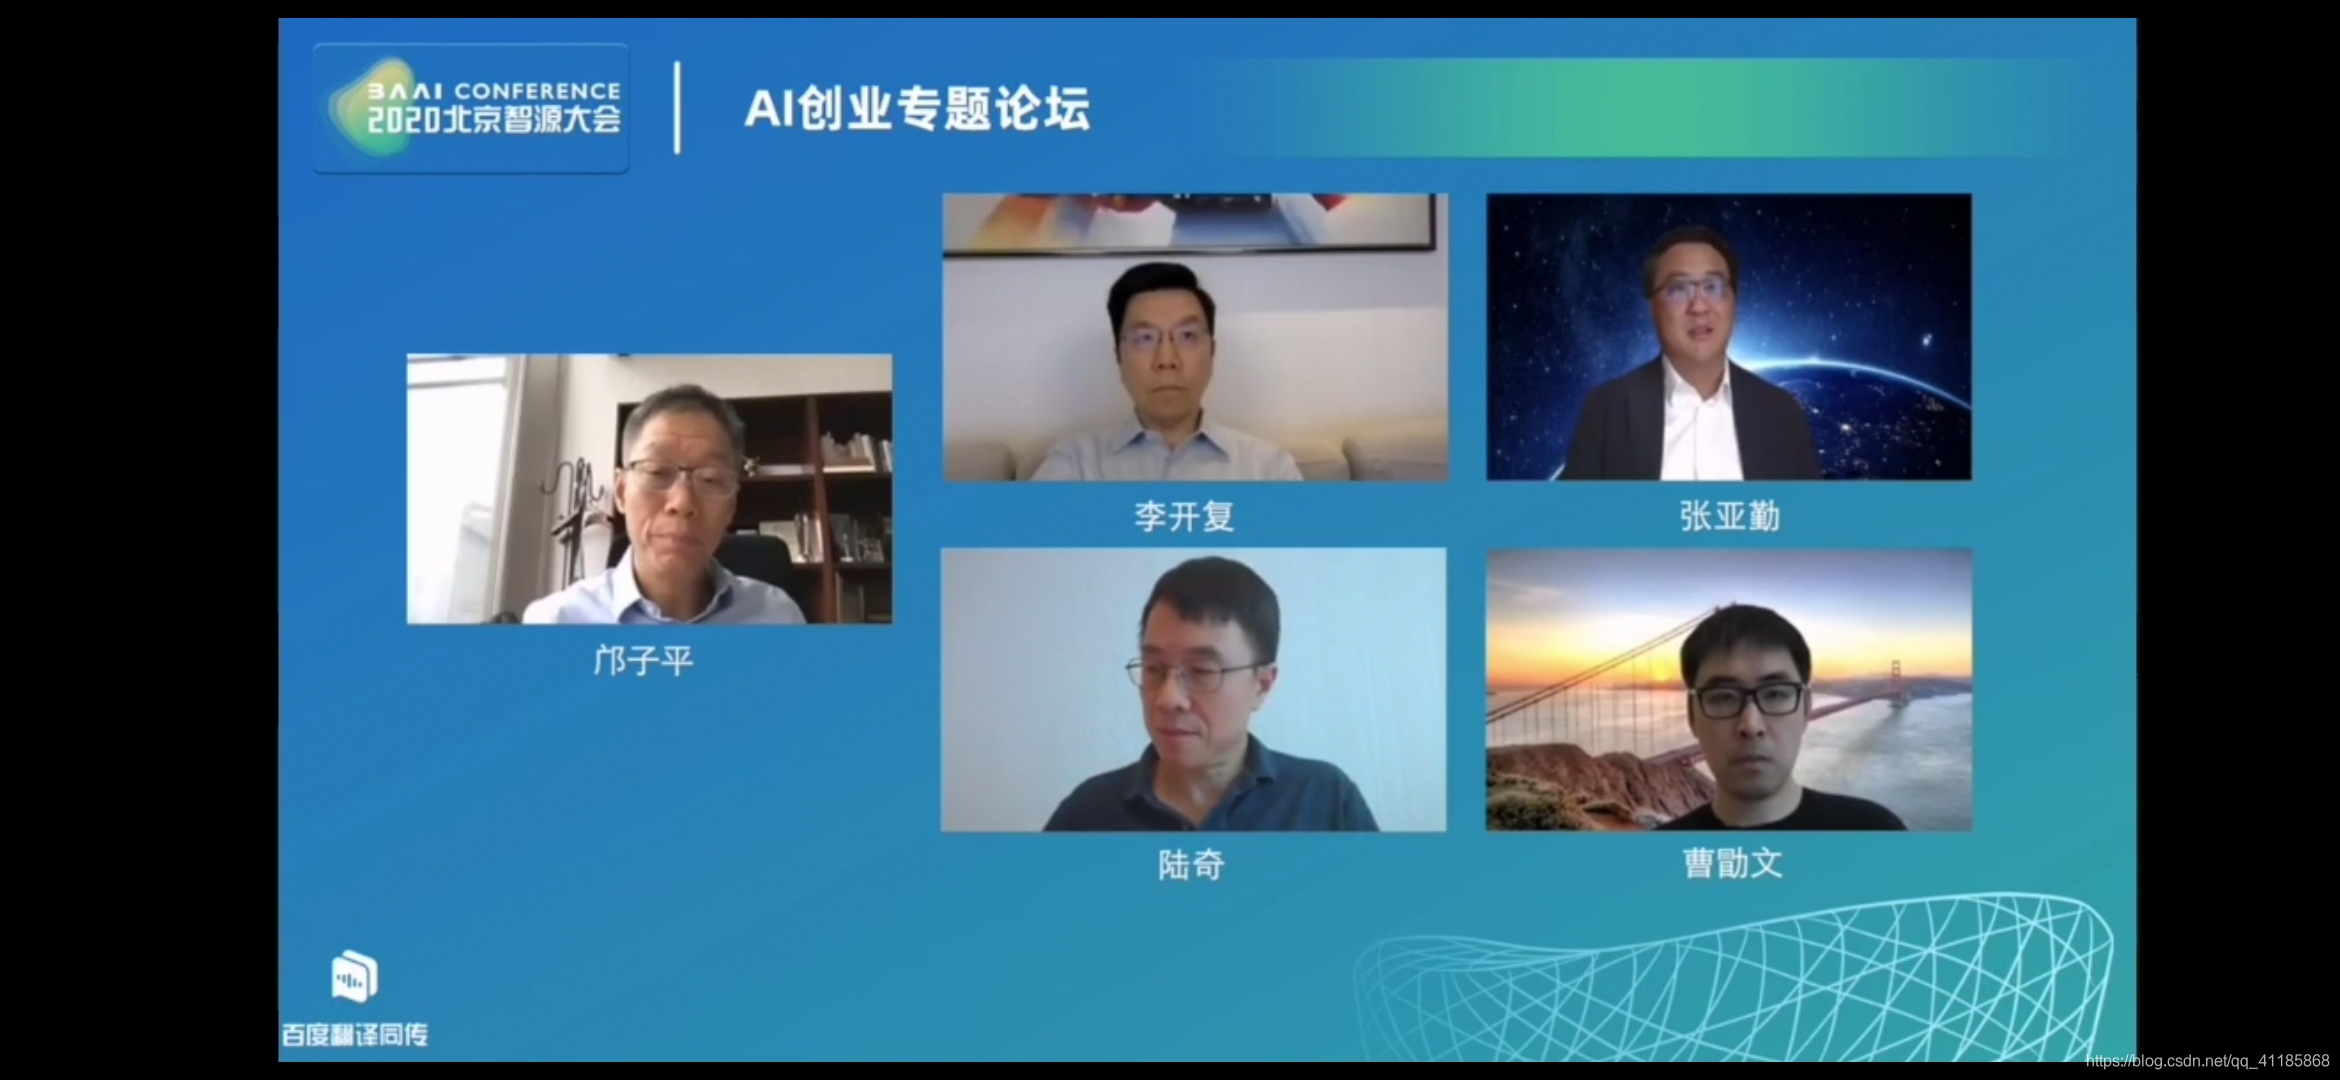 AI：2020年6月23日北京智源大会顶级大佬邝子平、李开复 、陆奇、张亚勤、曹勖文进行云上圆桌论坛《探讨AI与创业》